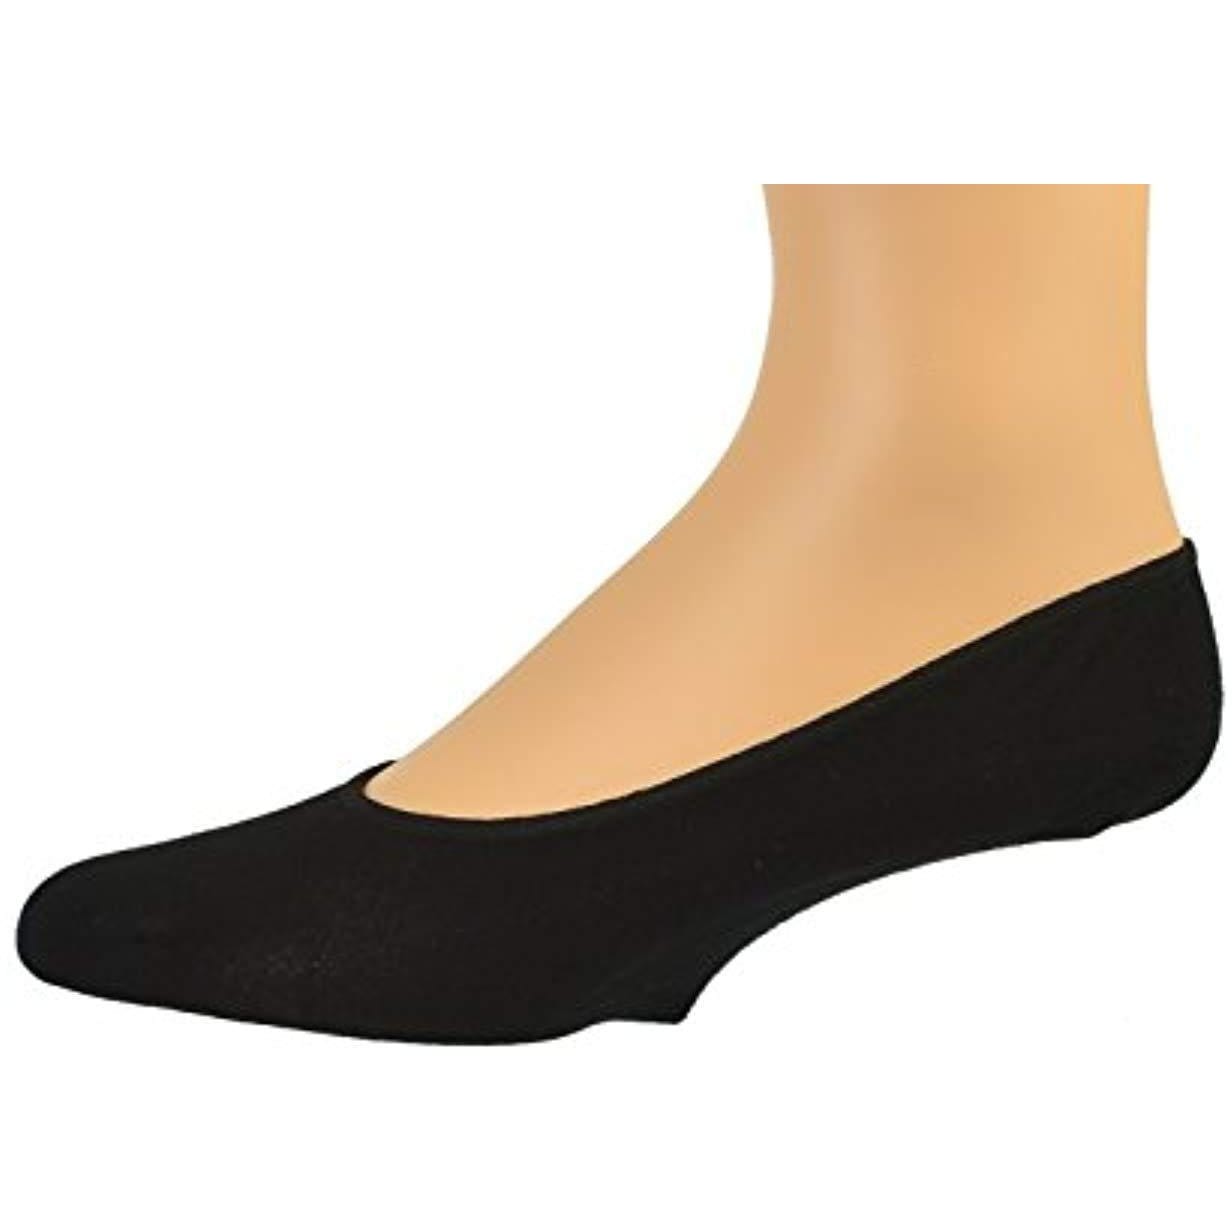 Sierra Socks Men Premium Bamboo No Show Low-Cut Seamless Toe liners Socks-4 Pairs Pack